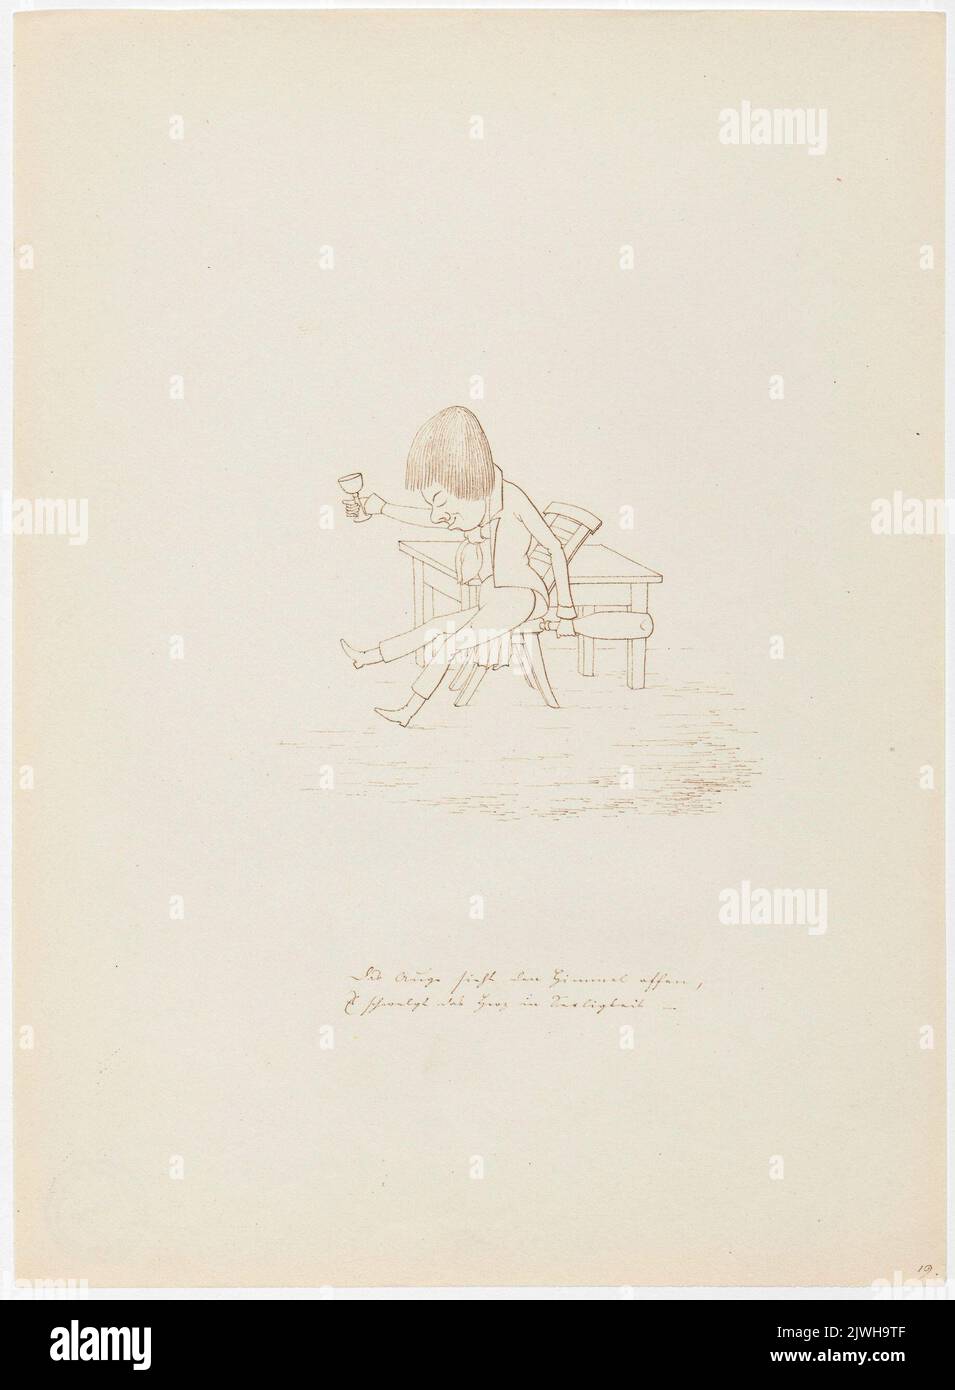 'Otwarcie patrzy oko w niebo, a serce topi się z rozkoszy'. Winkler, Karl Gustav Adolf (1810-1893), draughtsman, cartoonist Stock Photo